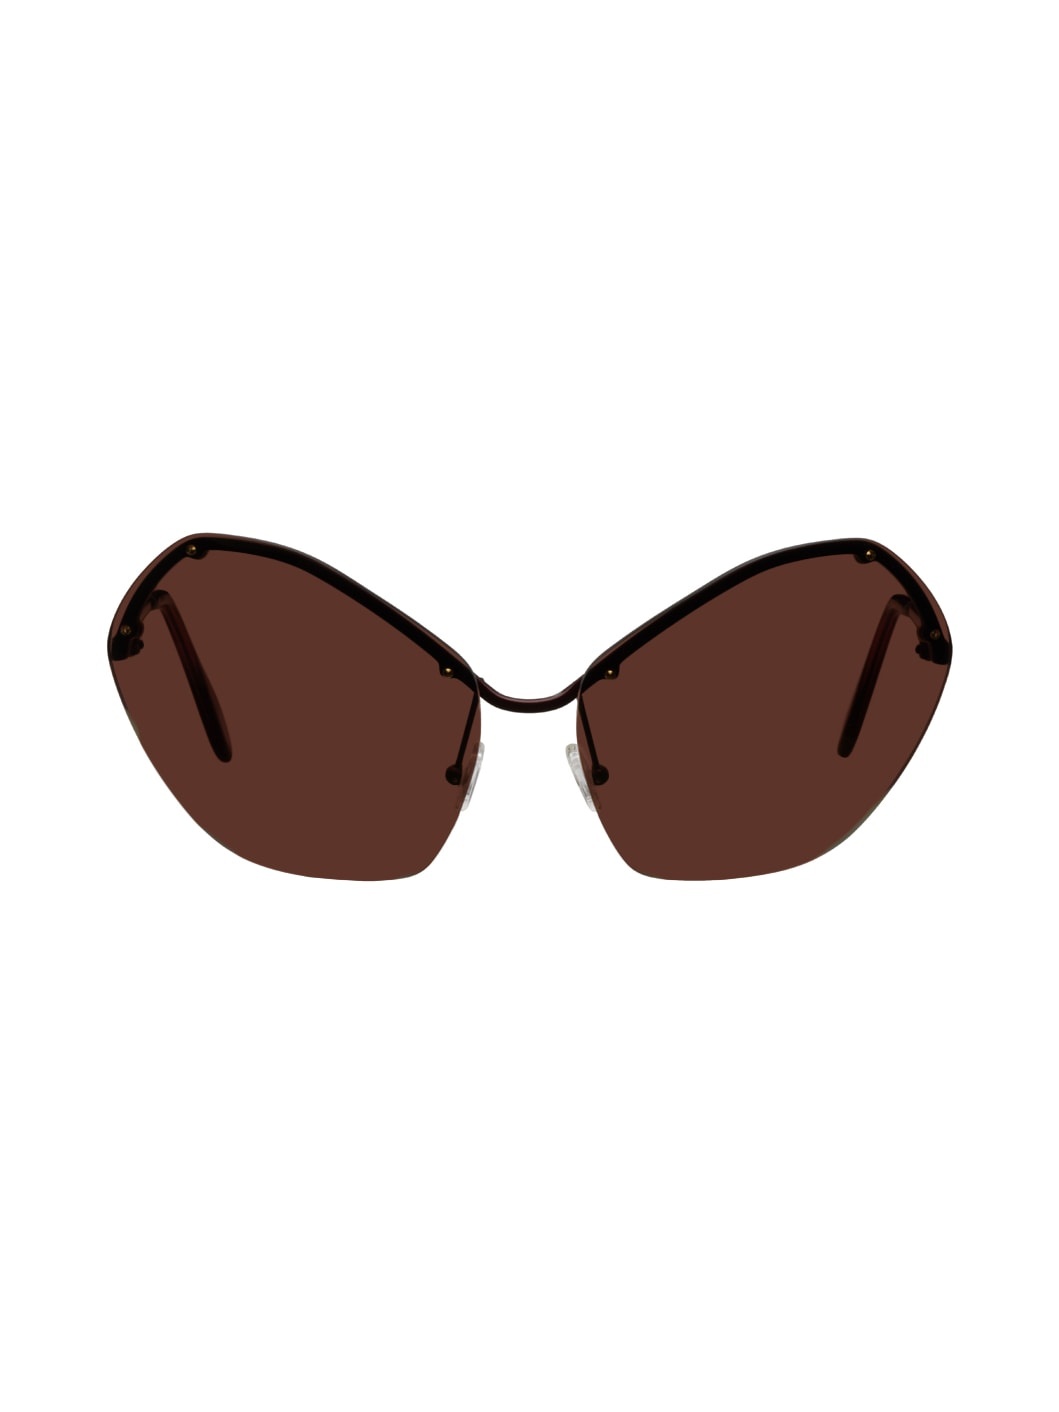 Burgundy Precious Sunglasses - 1